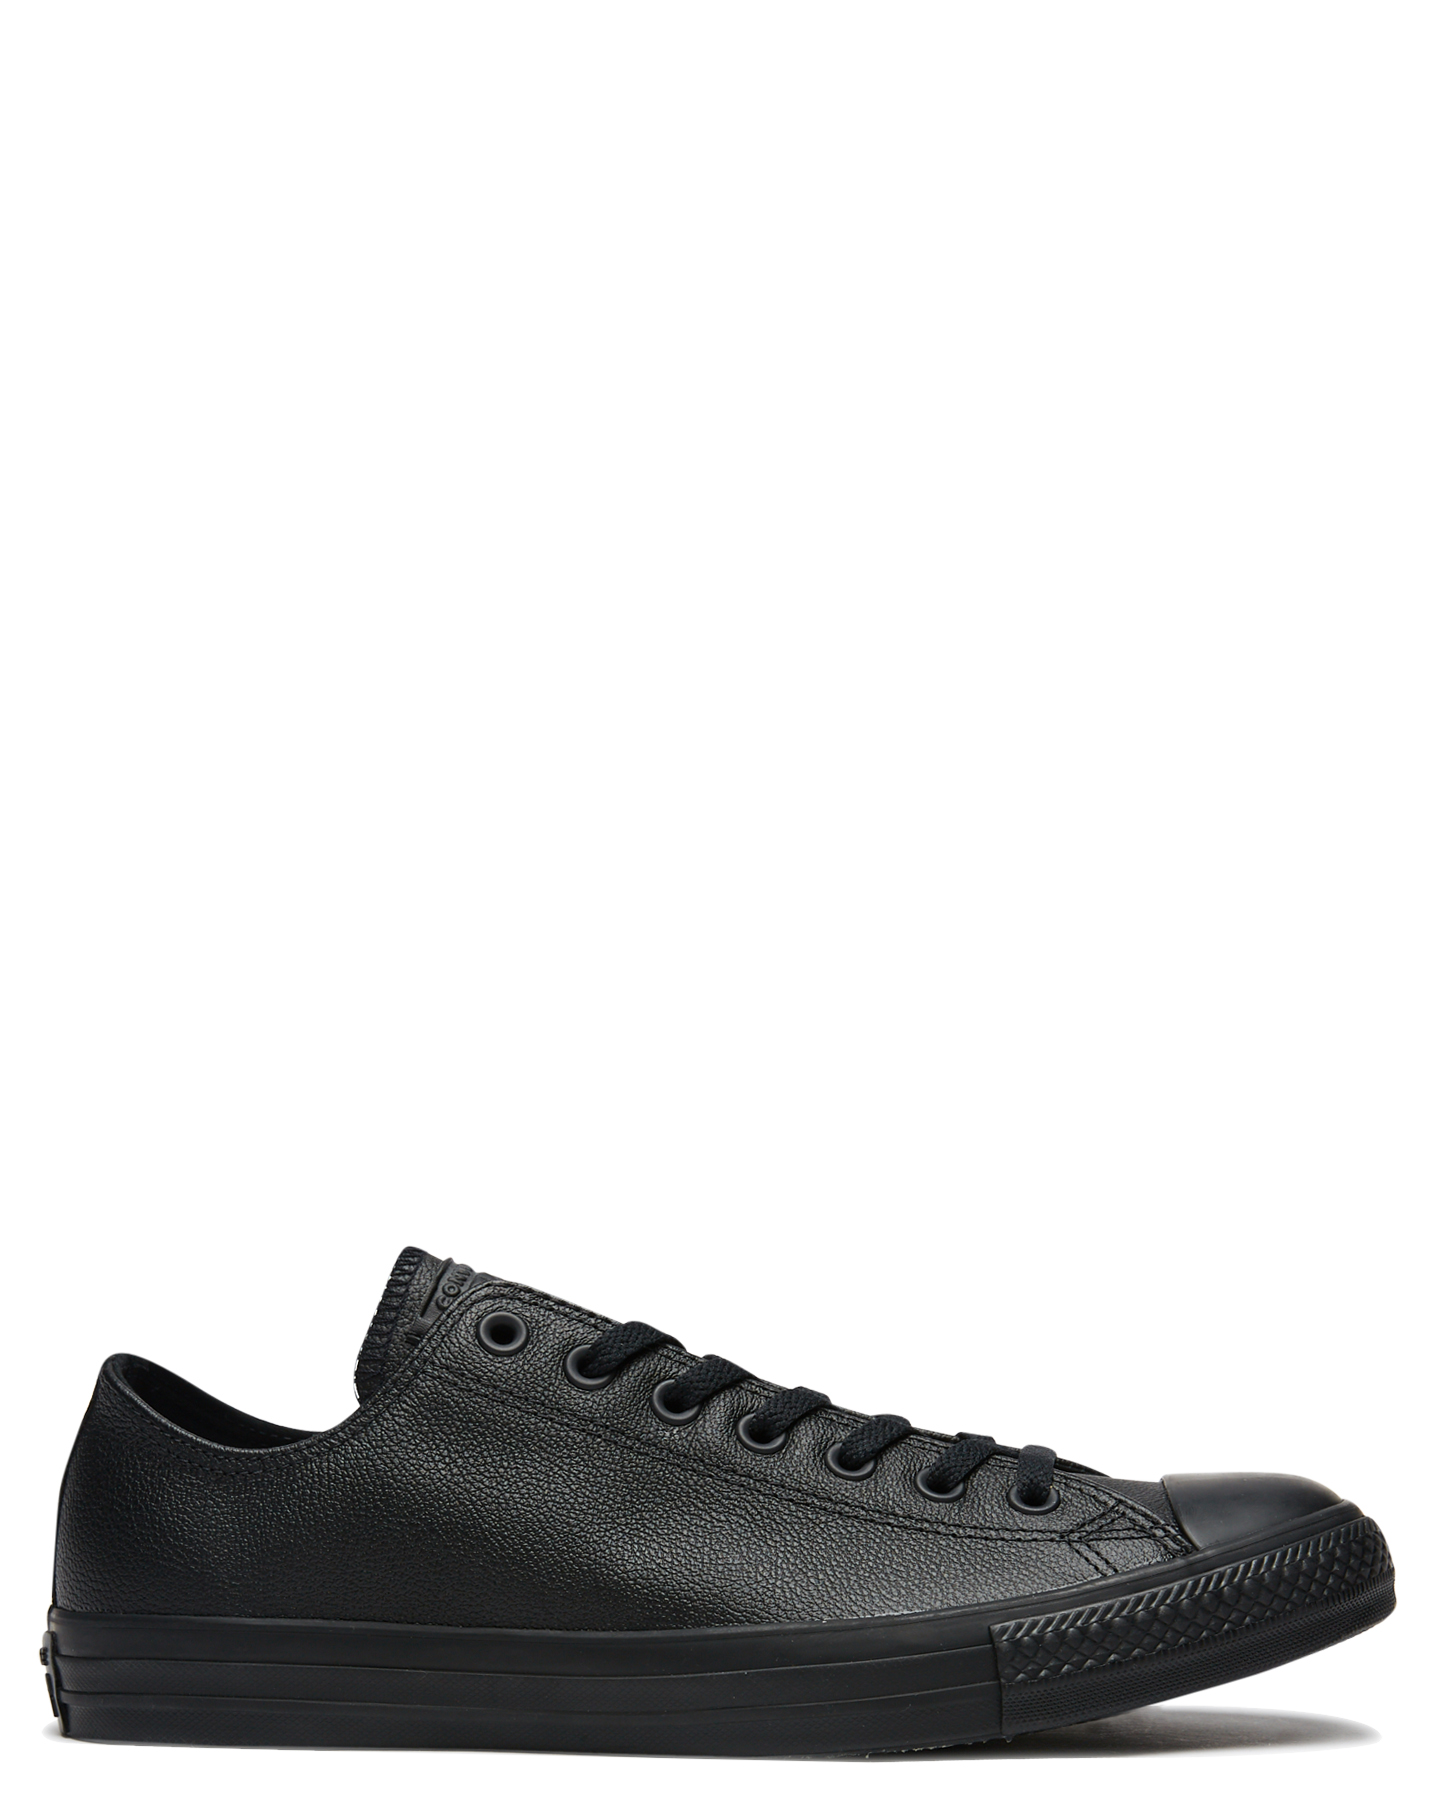 black leather converse sale